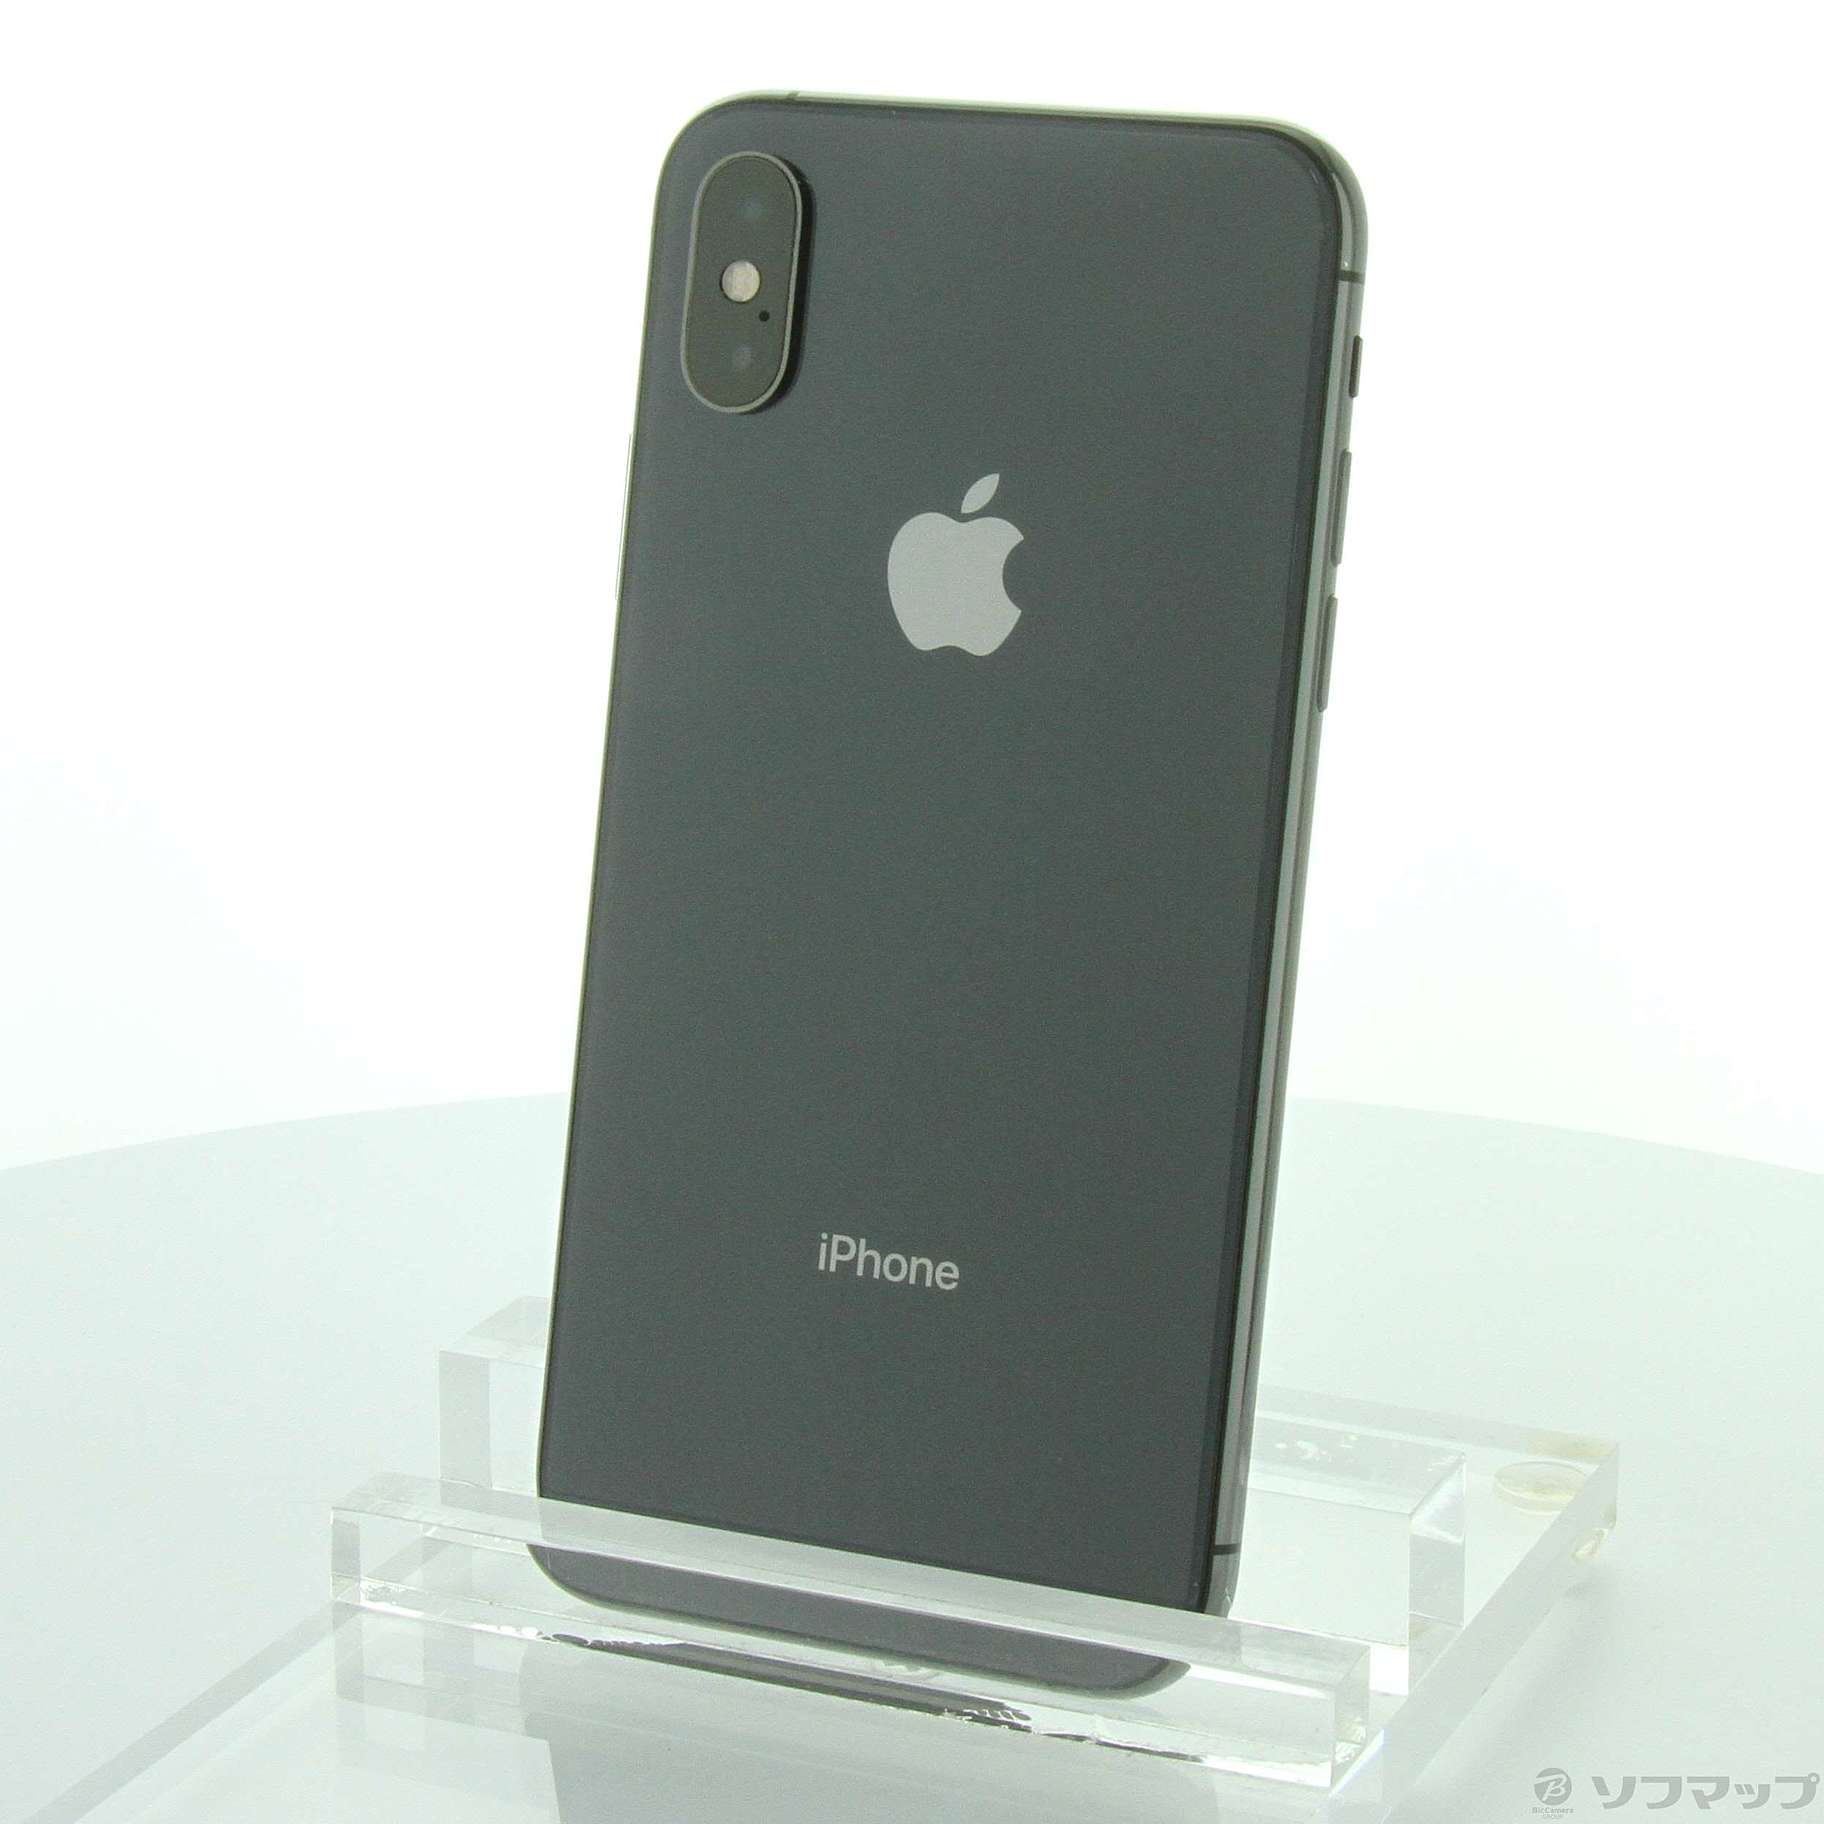 13,545円iPhone Xs Max Space Gray 256 GB Softbank